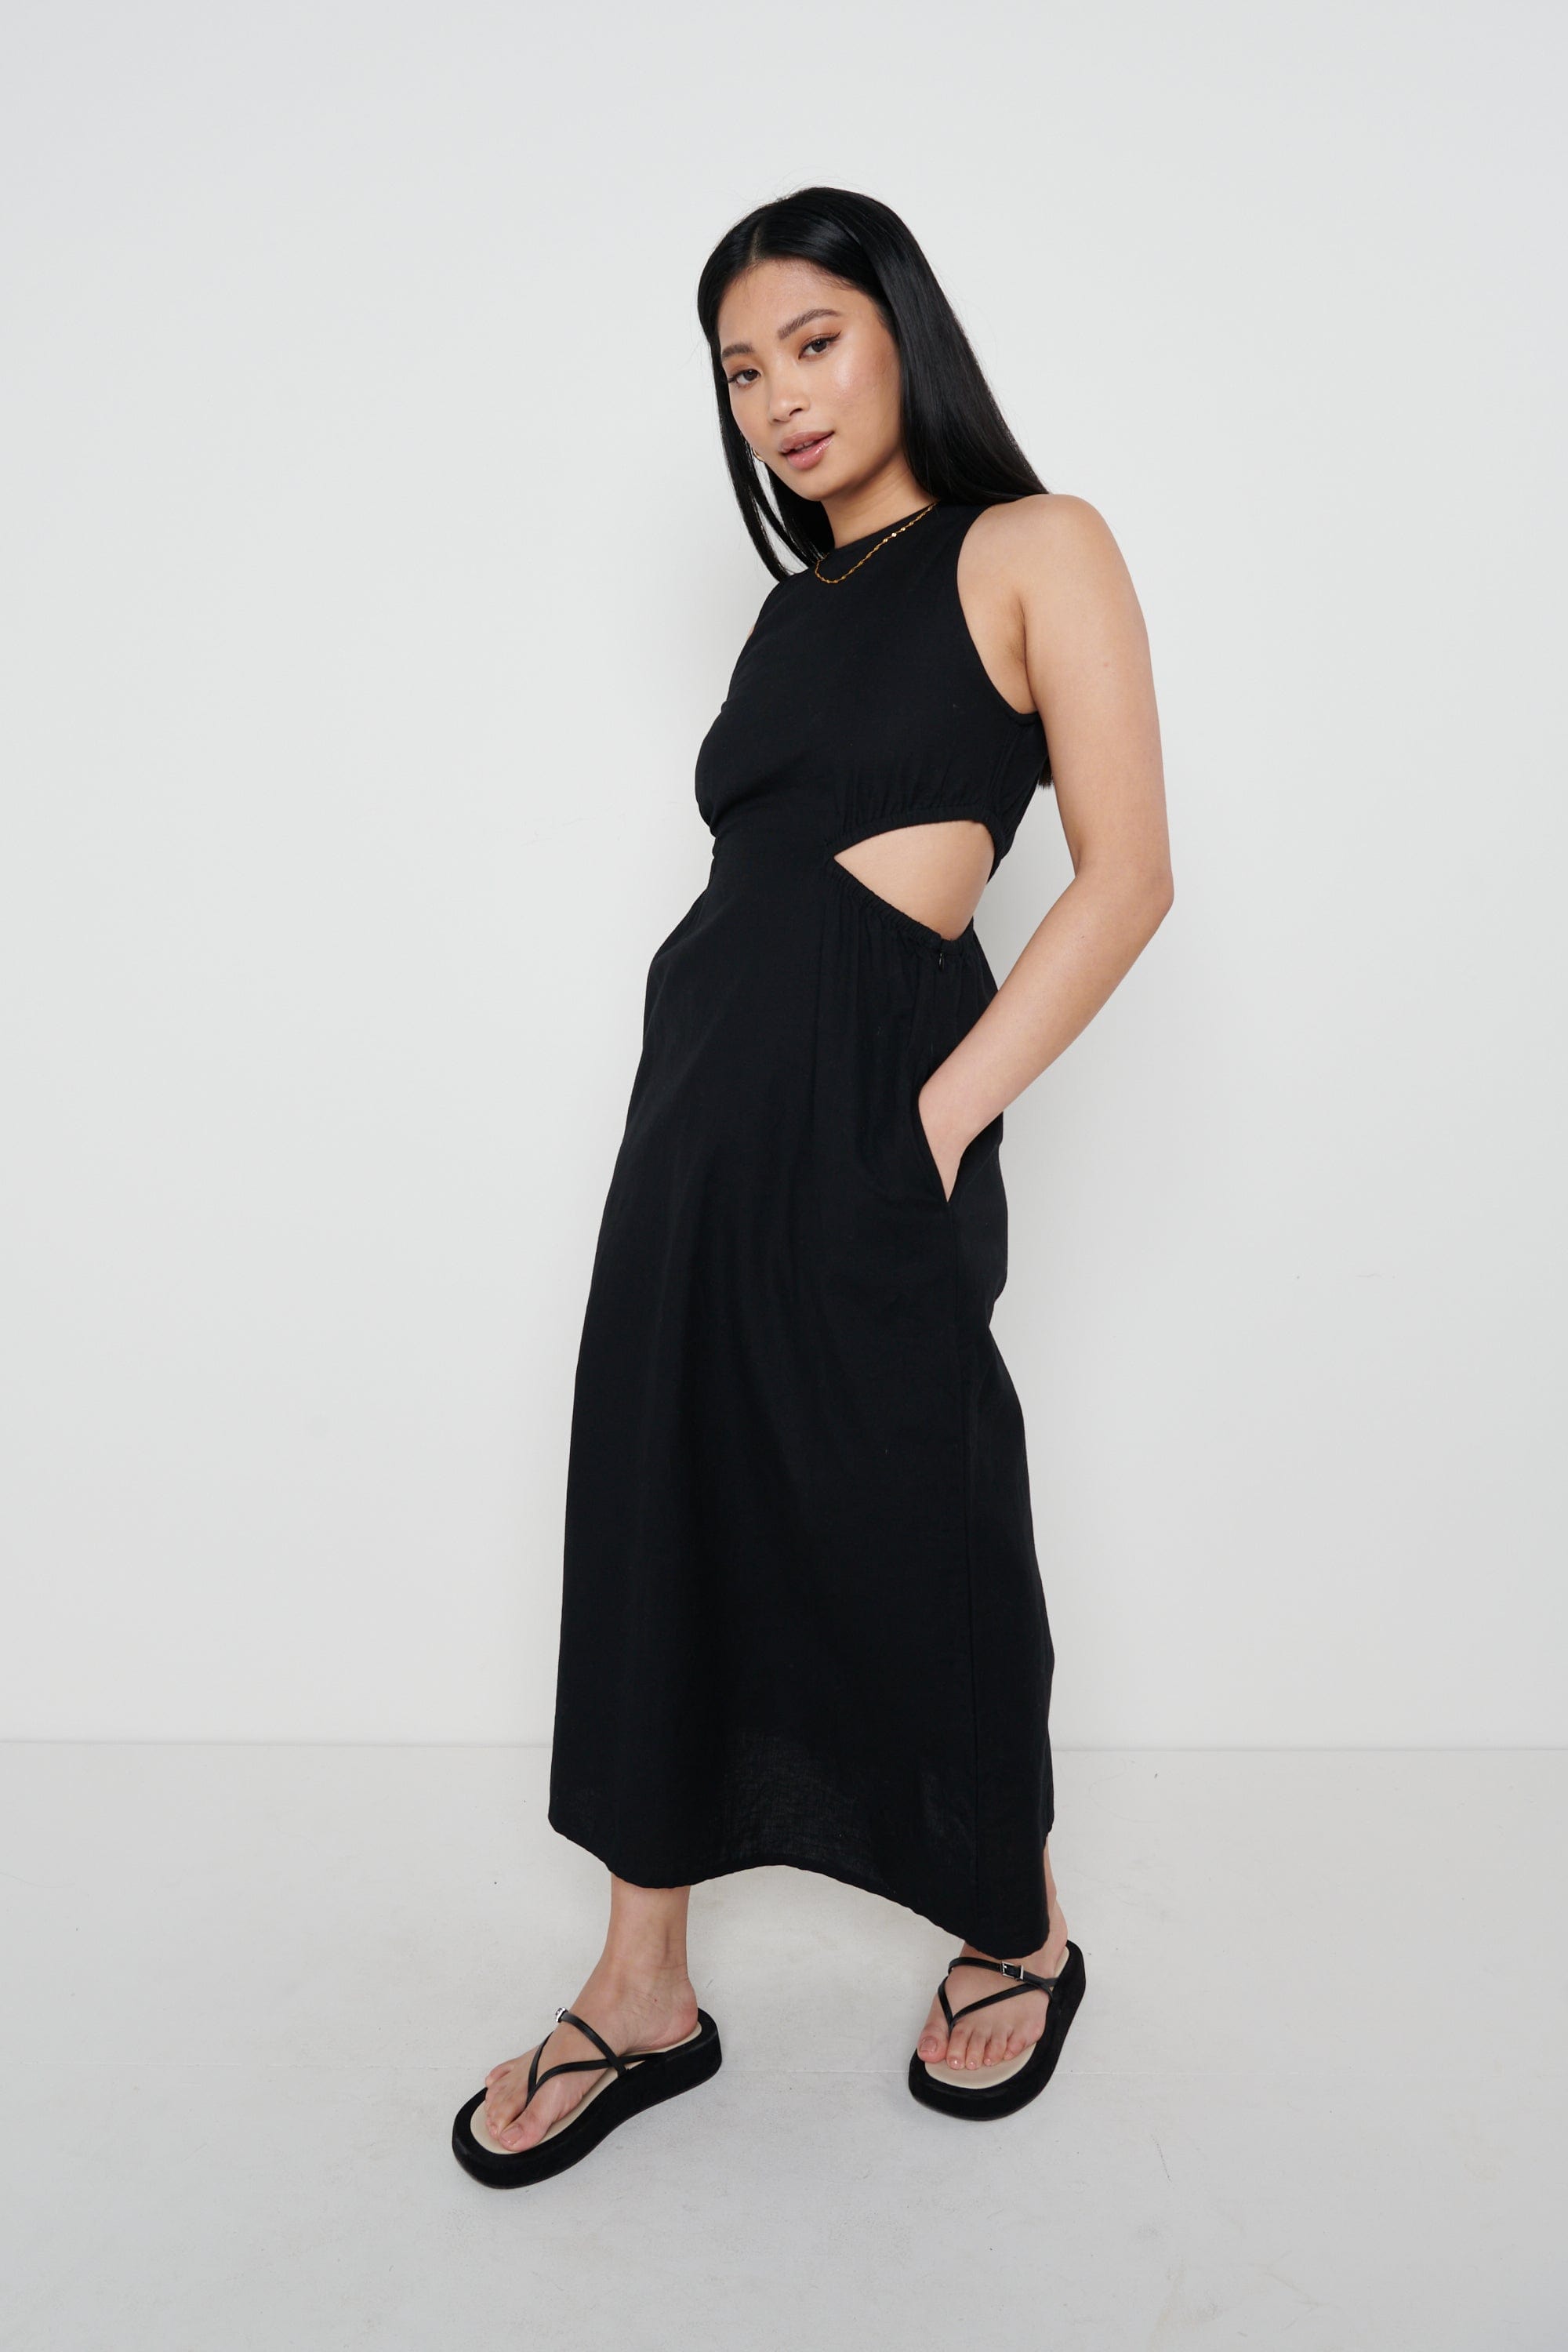 Pascale Cut Out Midaxi Dress - Black, 14